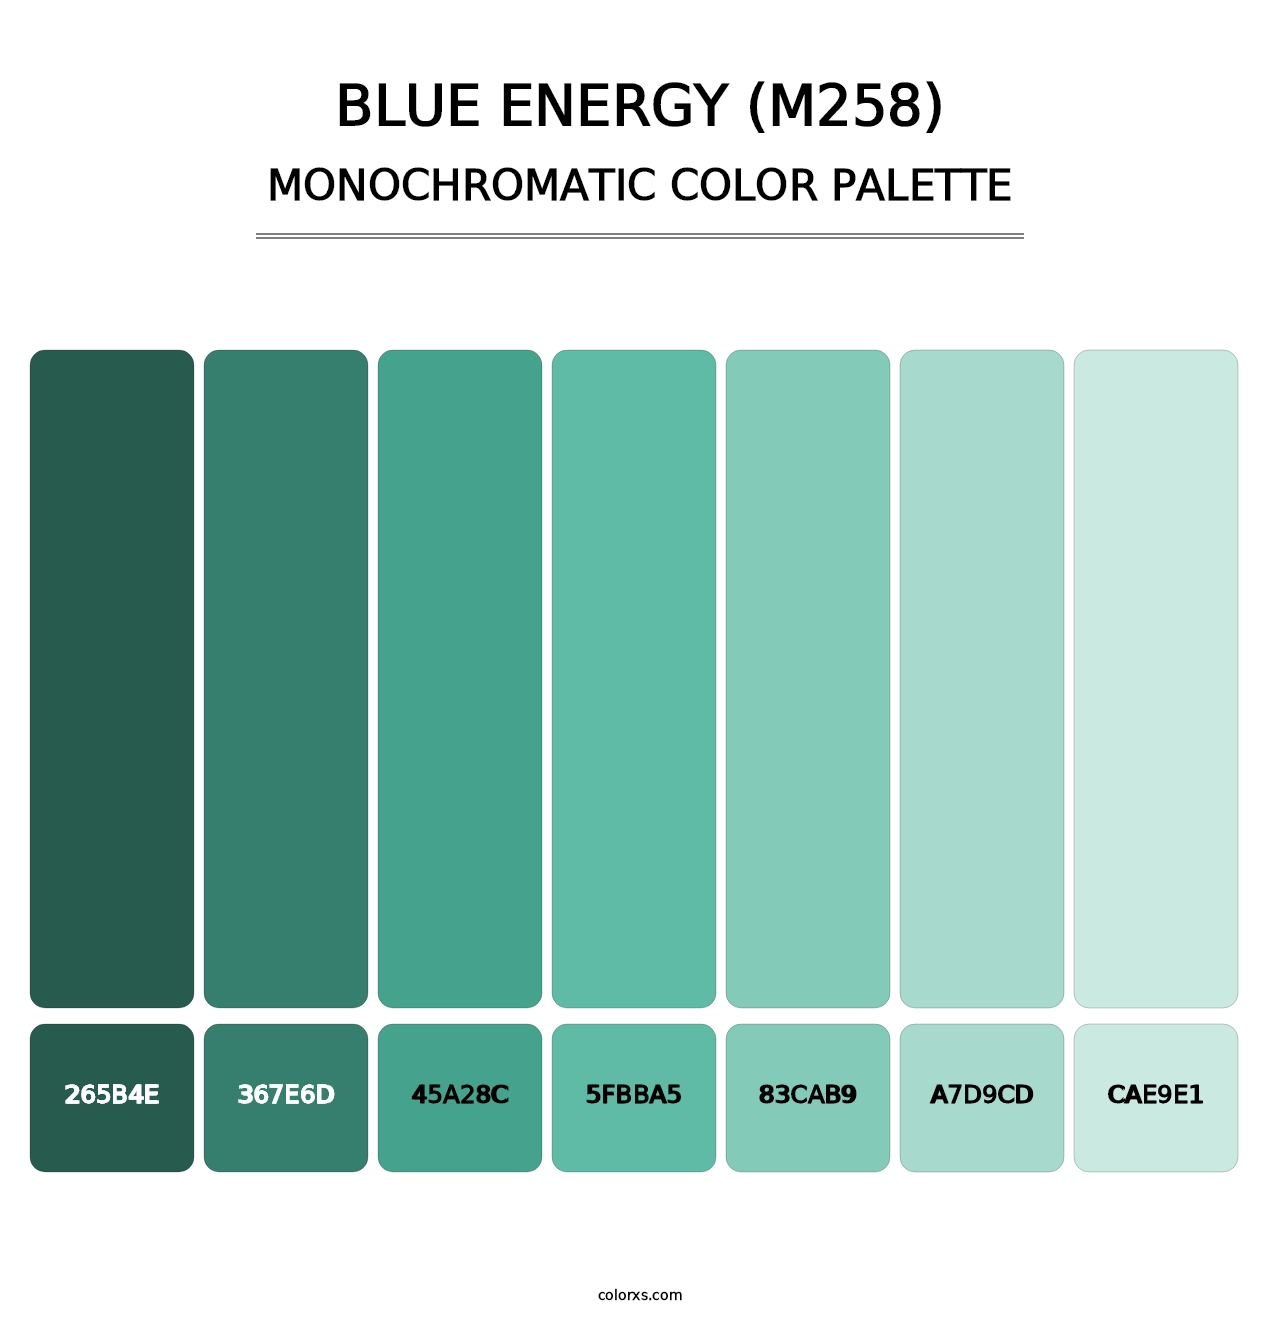 Blue Energy (M258) - Monochromatic Color Palette